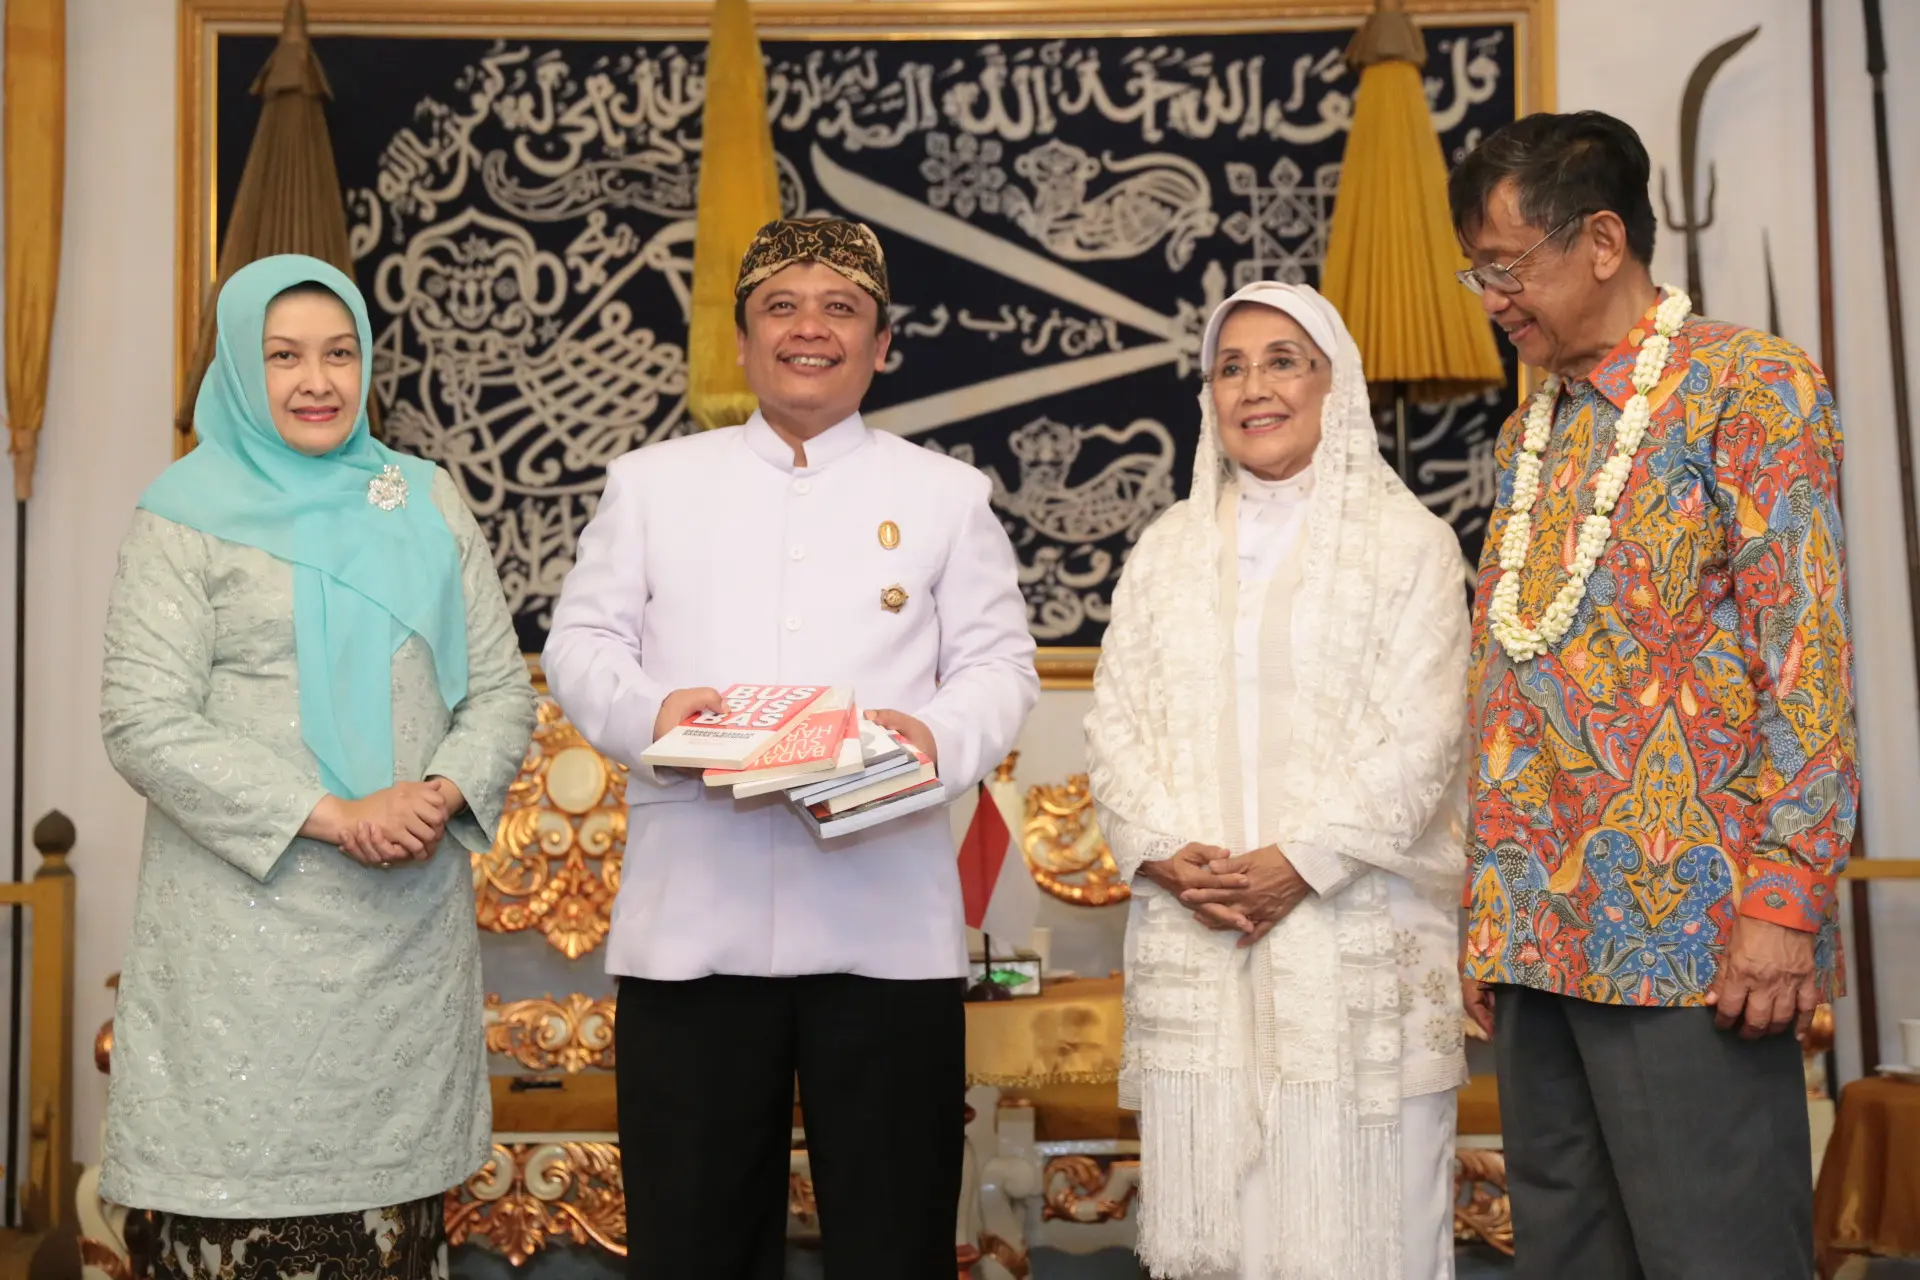 Kekaguman pun diutarakan Sultan Arief atas konsistensi yang telah dilakukan Ajip sampai saat ini dalam melestarikan bidang budaya. (Adrian Putra/Bintang.com)